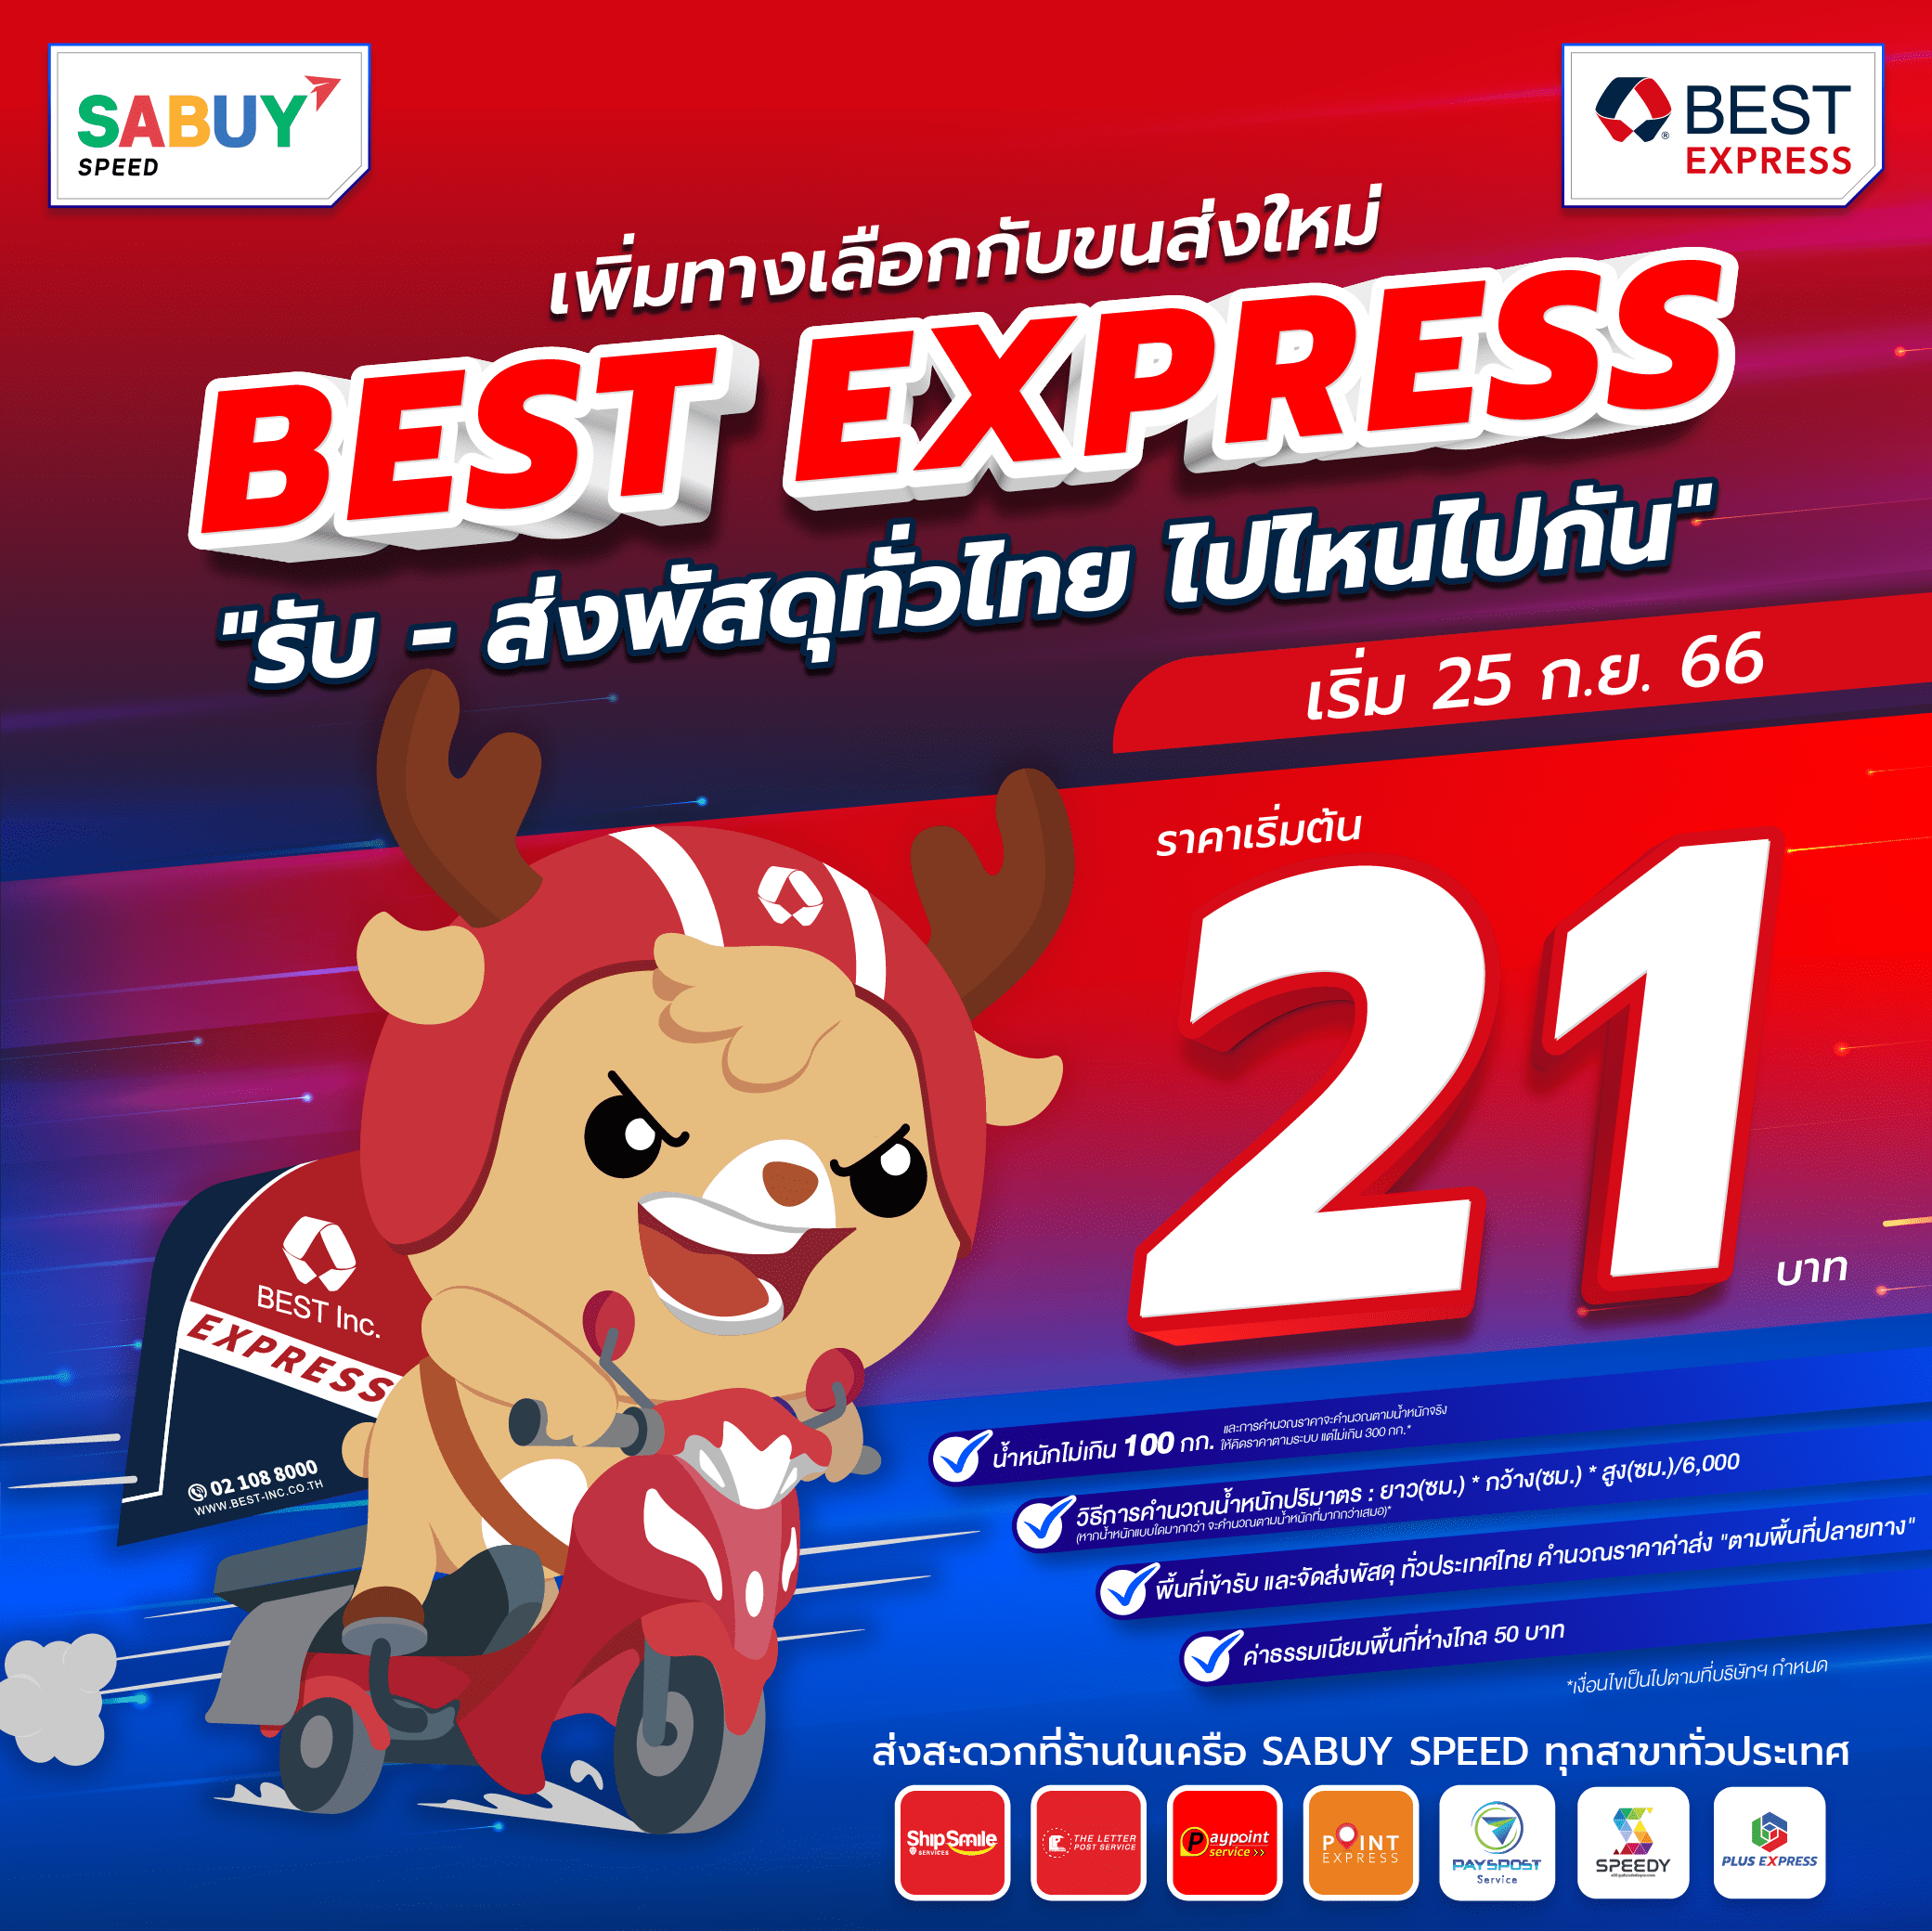 BEST Express ผู้ให้บริการรับ-ส่ง พัสดุด่วนทั่วไทย